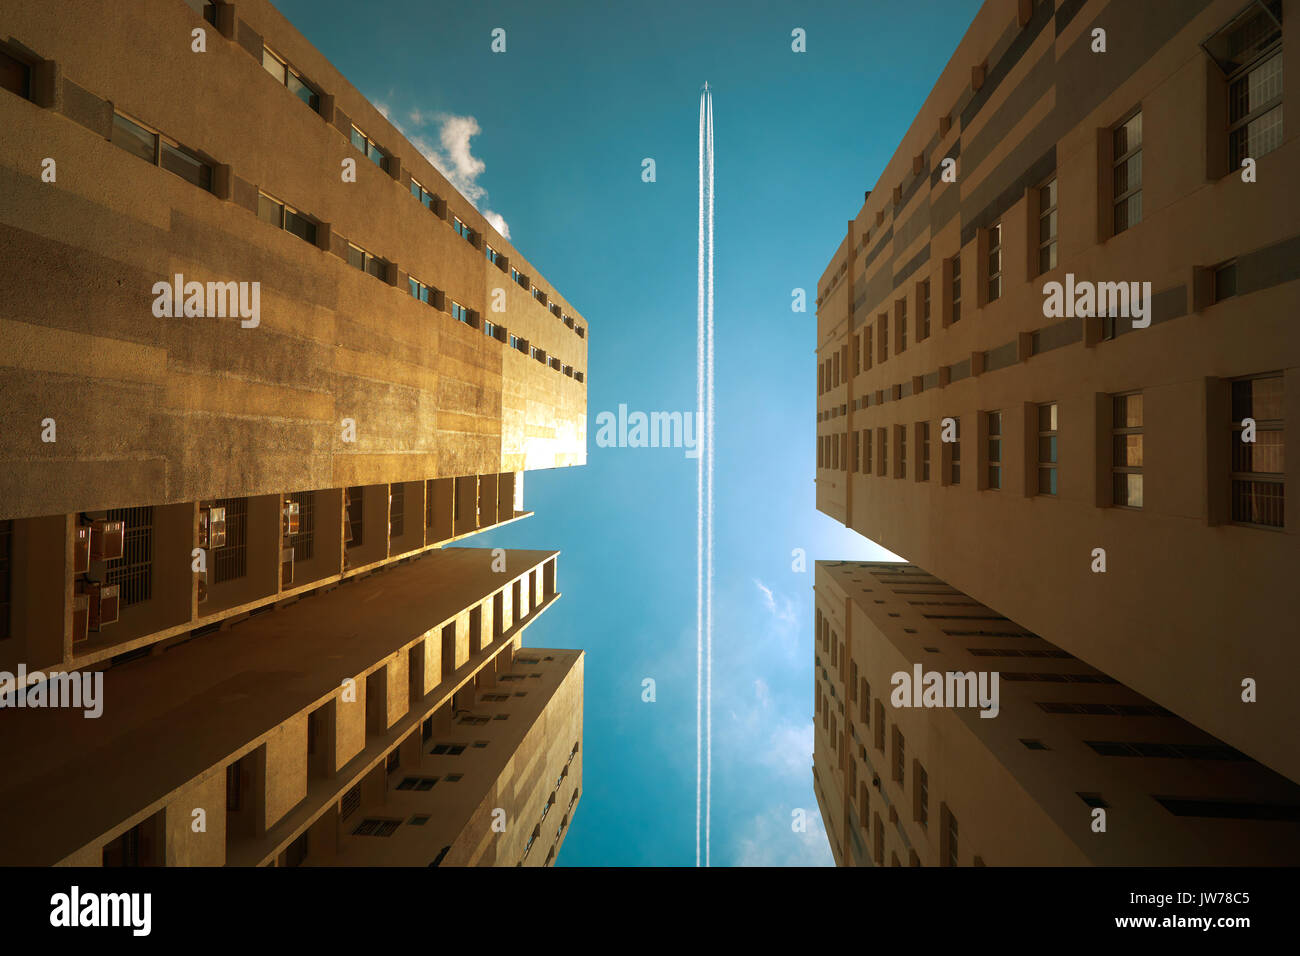 Aeroplano contrail contro il cielo blu chiaro con abstract basso angolo vista del comune di affari moderni grattacieli. Foto Stock